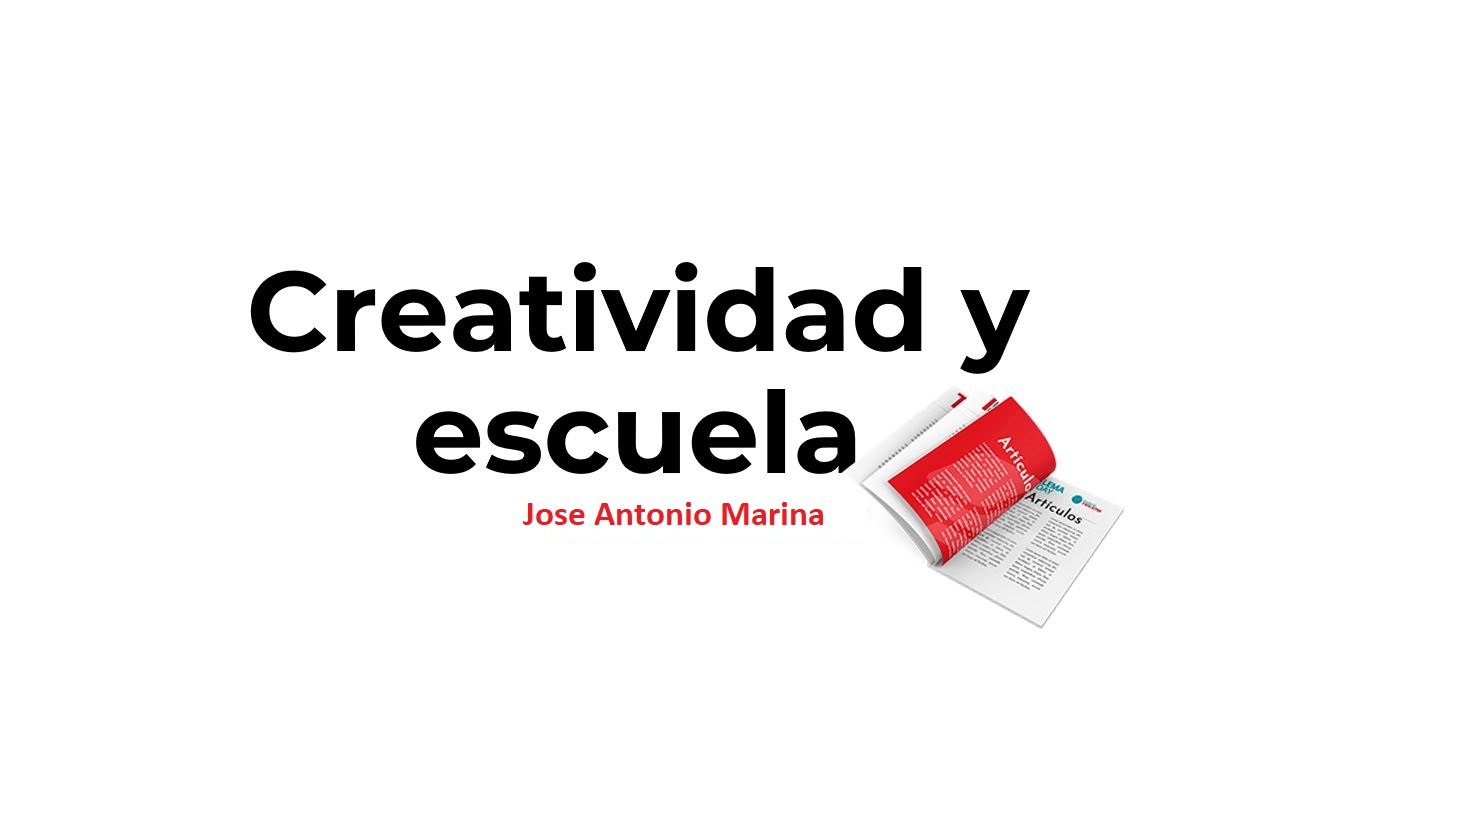 creatividad y escuela artículo escrito por Jose Antonio Marina